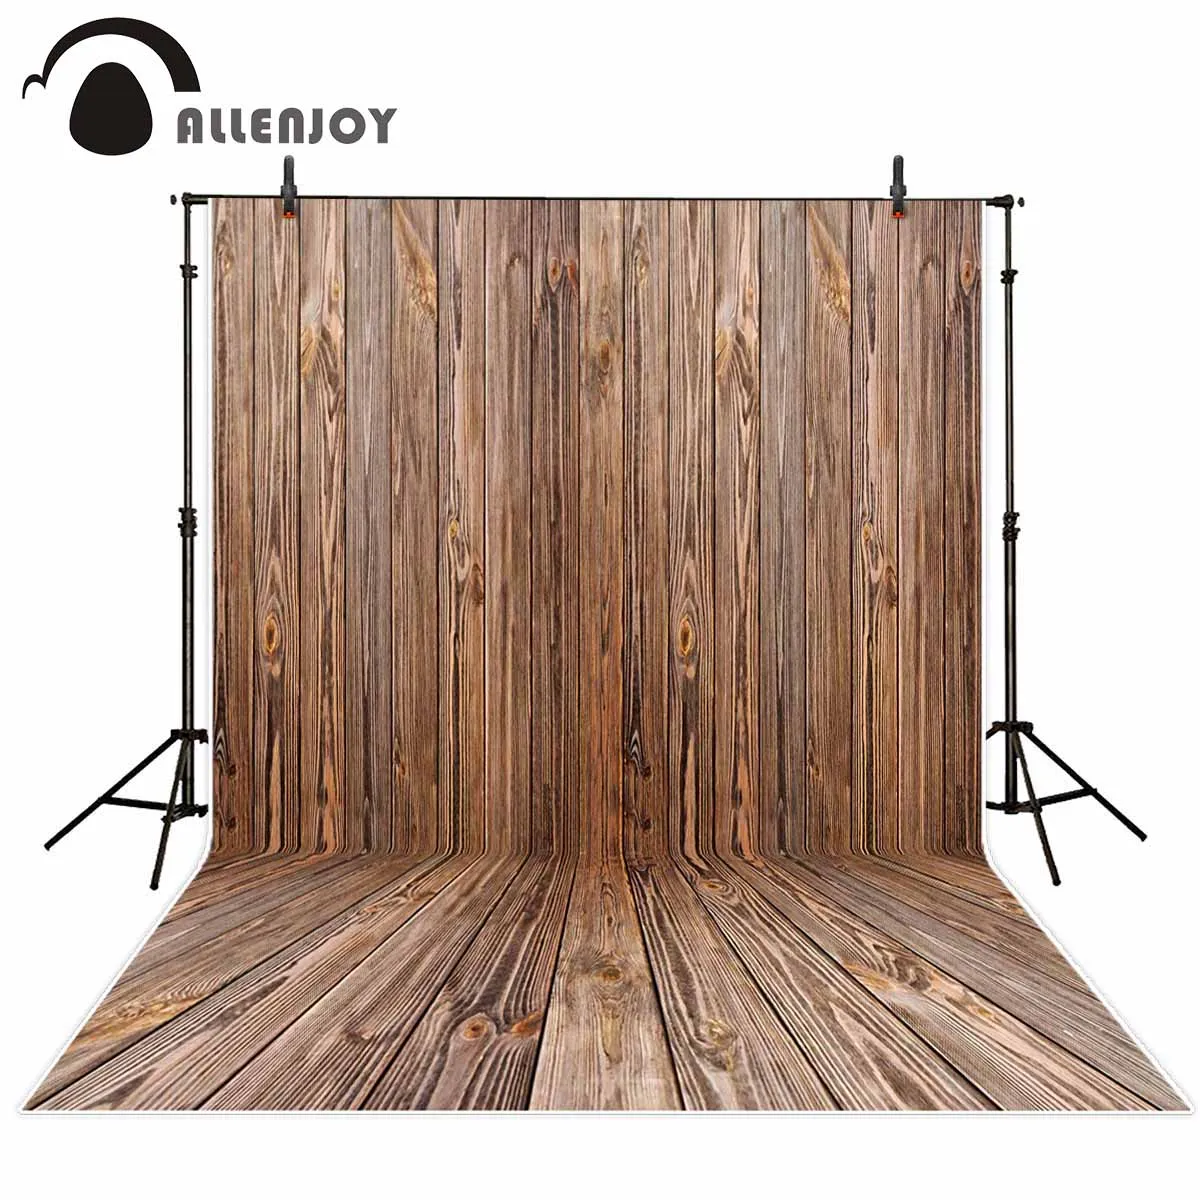 Фон Allenjoy для фотостудии коричневый абстрактный деревянный текстурный фон